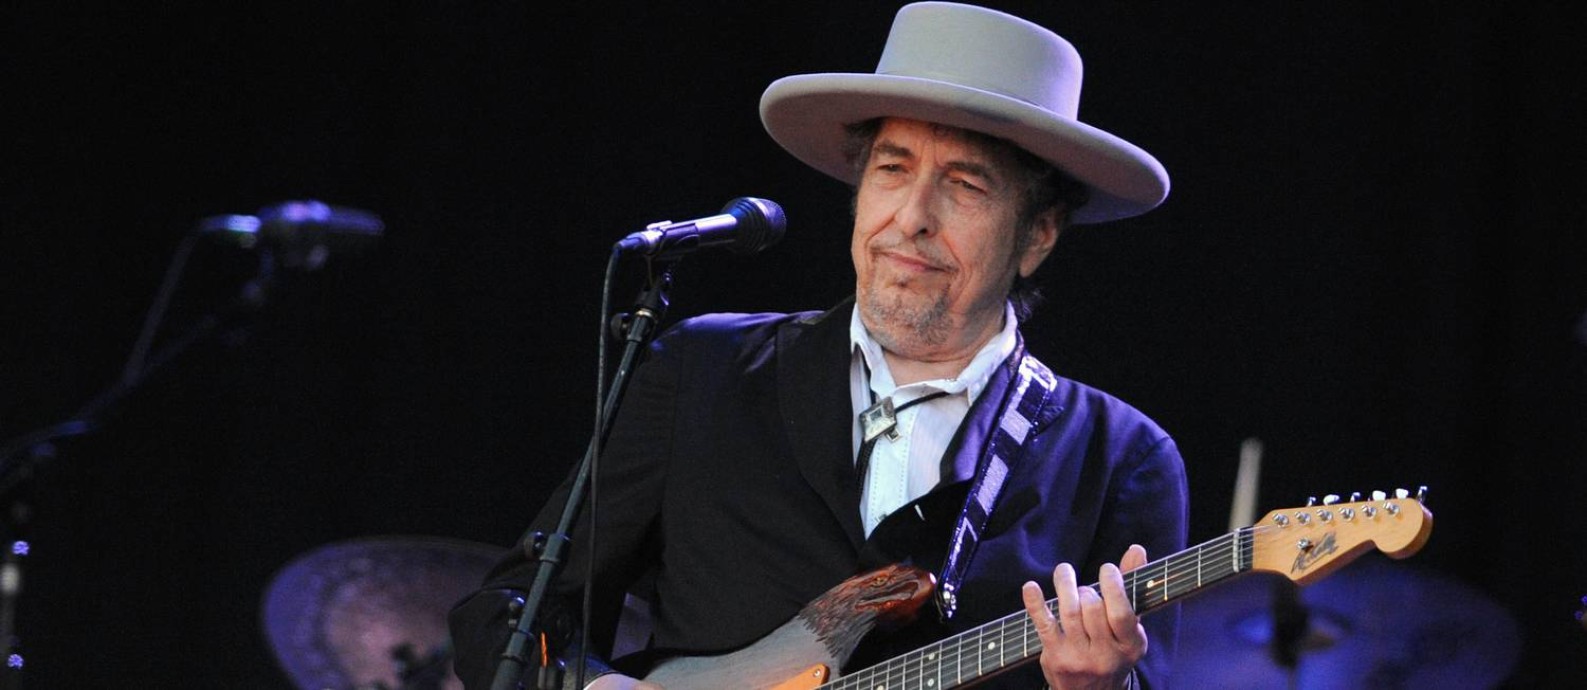 Bob Dylan se apresenta em show em 2012 Foto: AFP